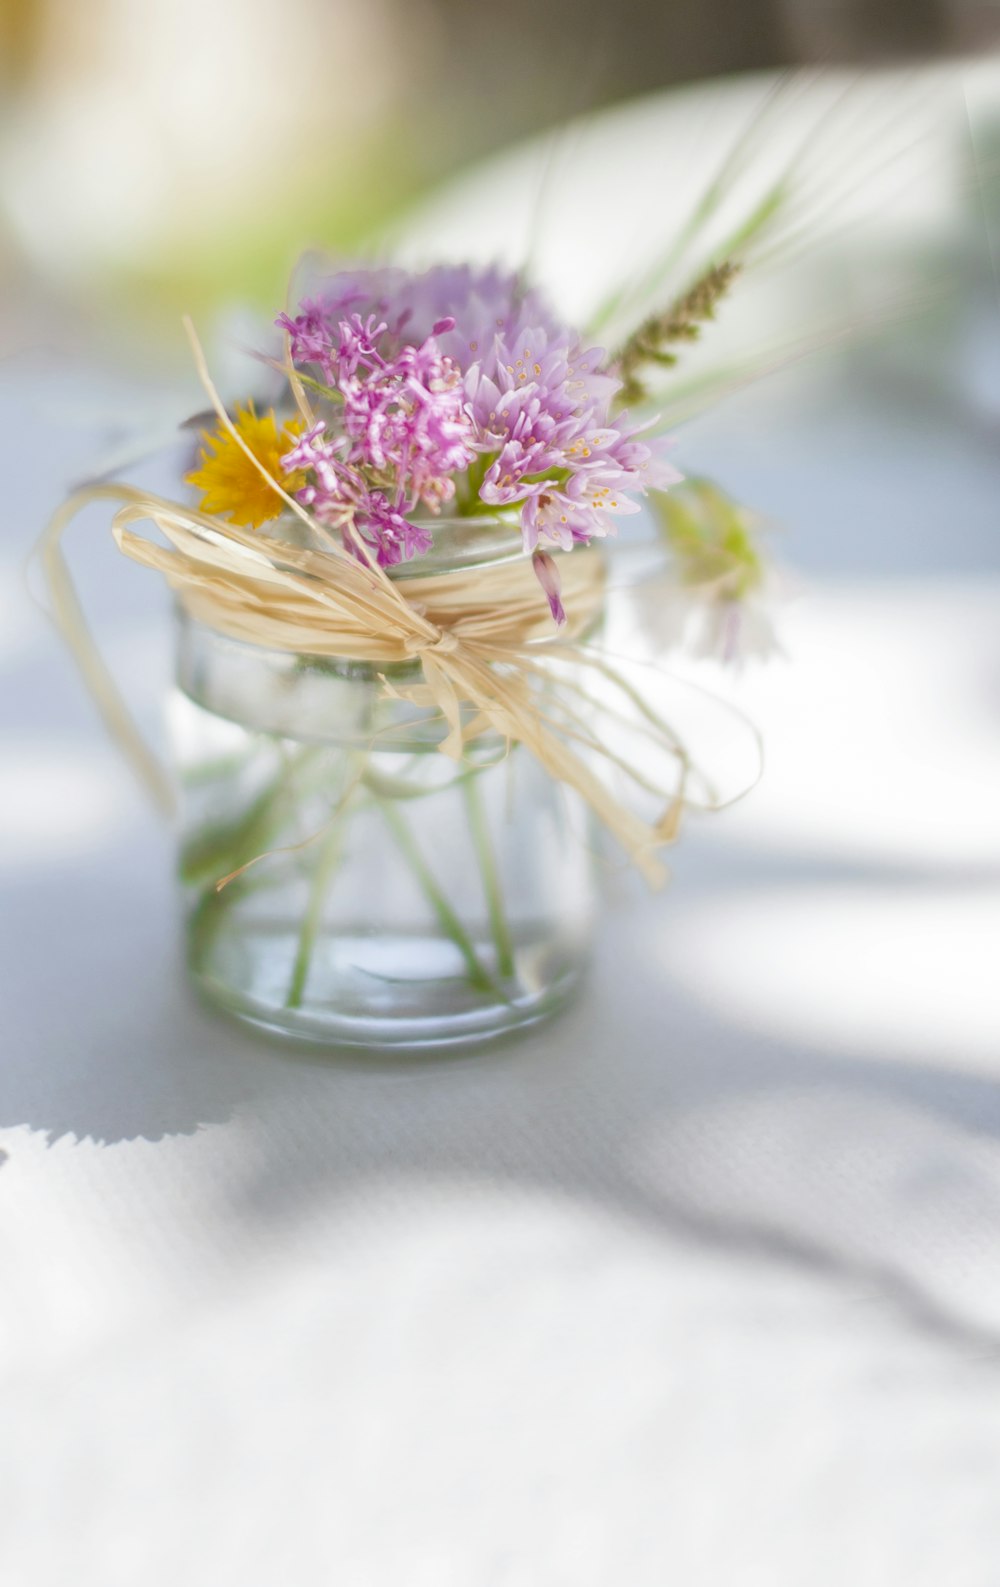 fiore dai petali viola con fotografia a fuoco selettiva del vaso